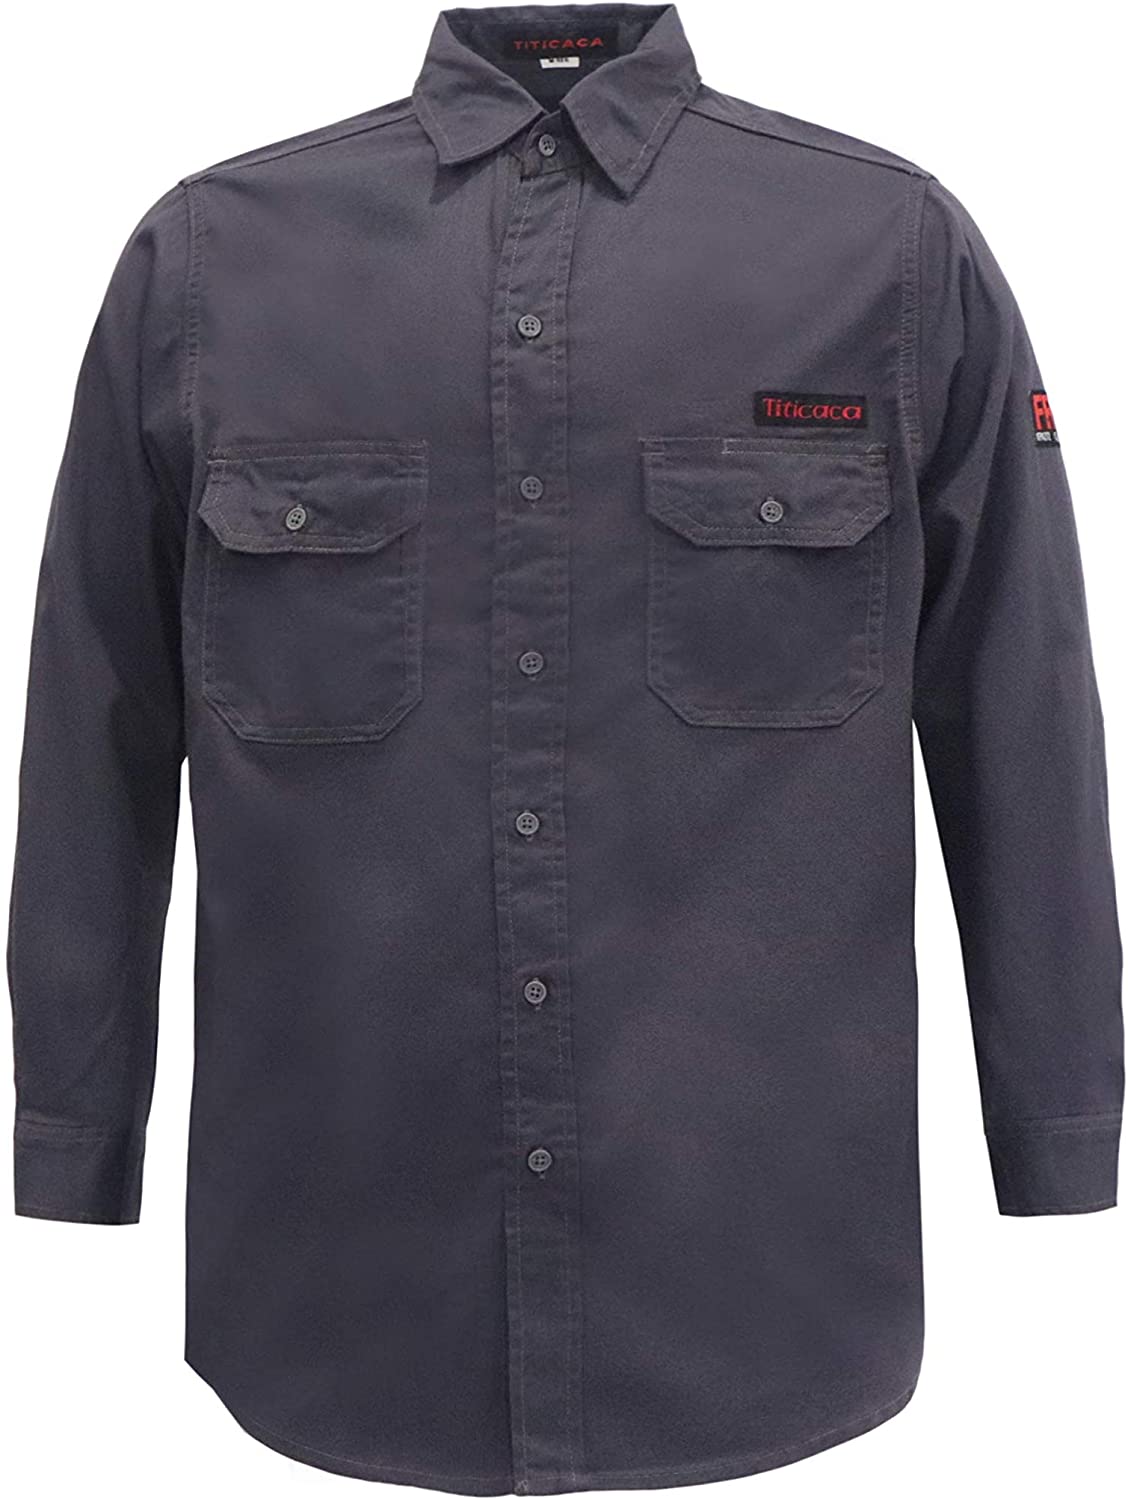 Titicaca FR Shirt Flame Resistant Men Cotton Lightweight Long Sleeve Navy shirt 